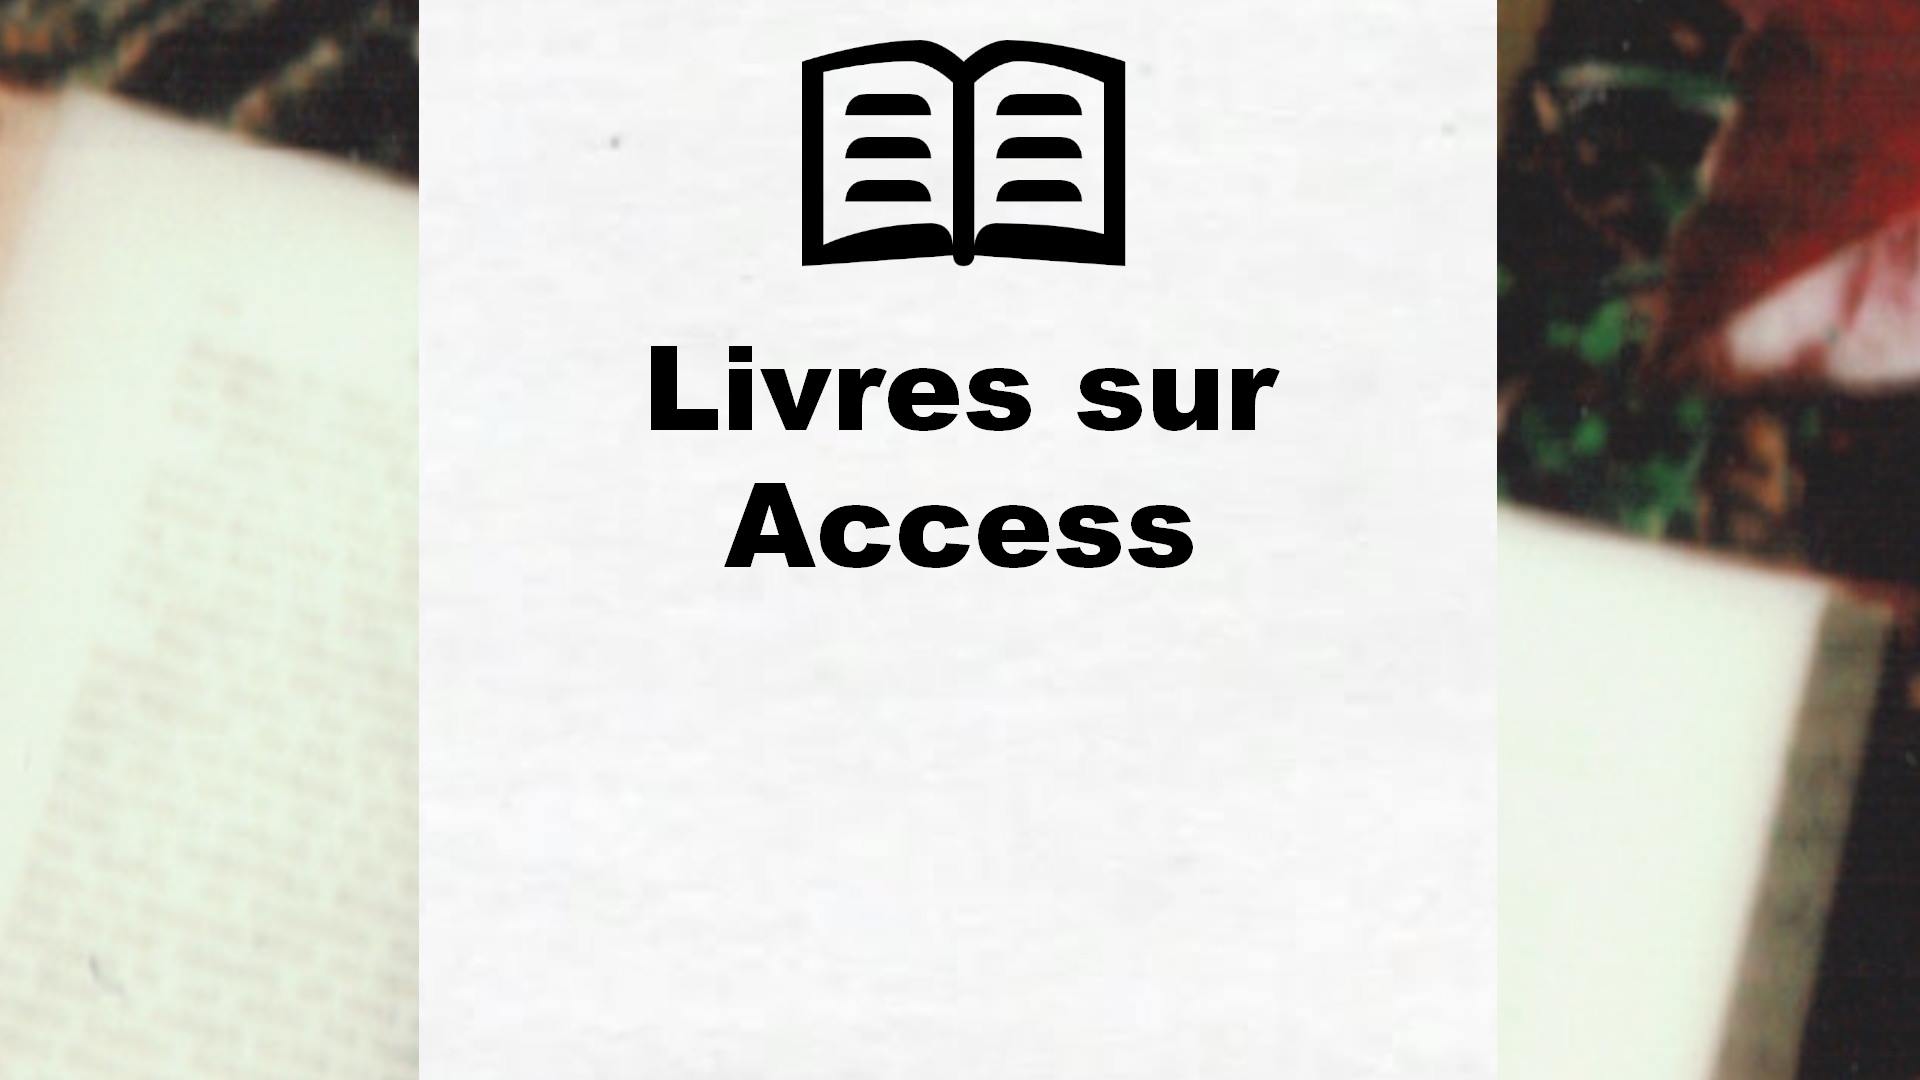 Livres sur Access